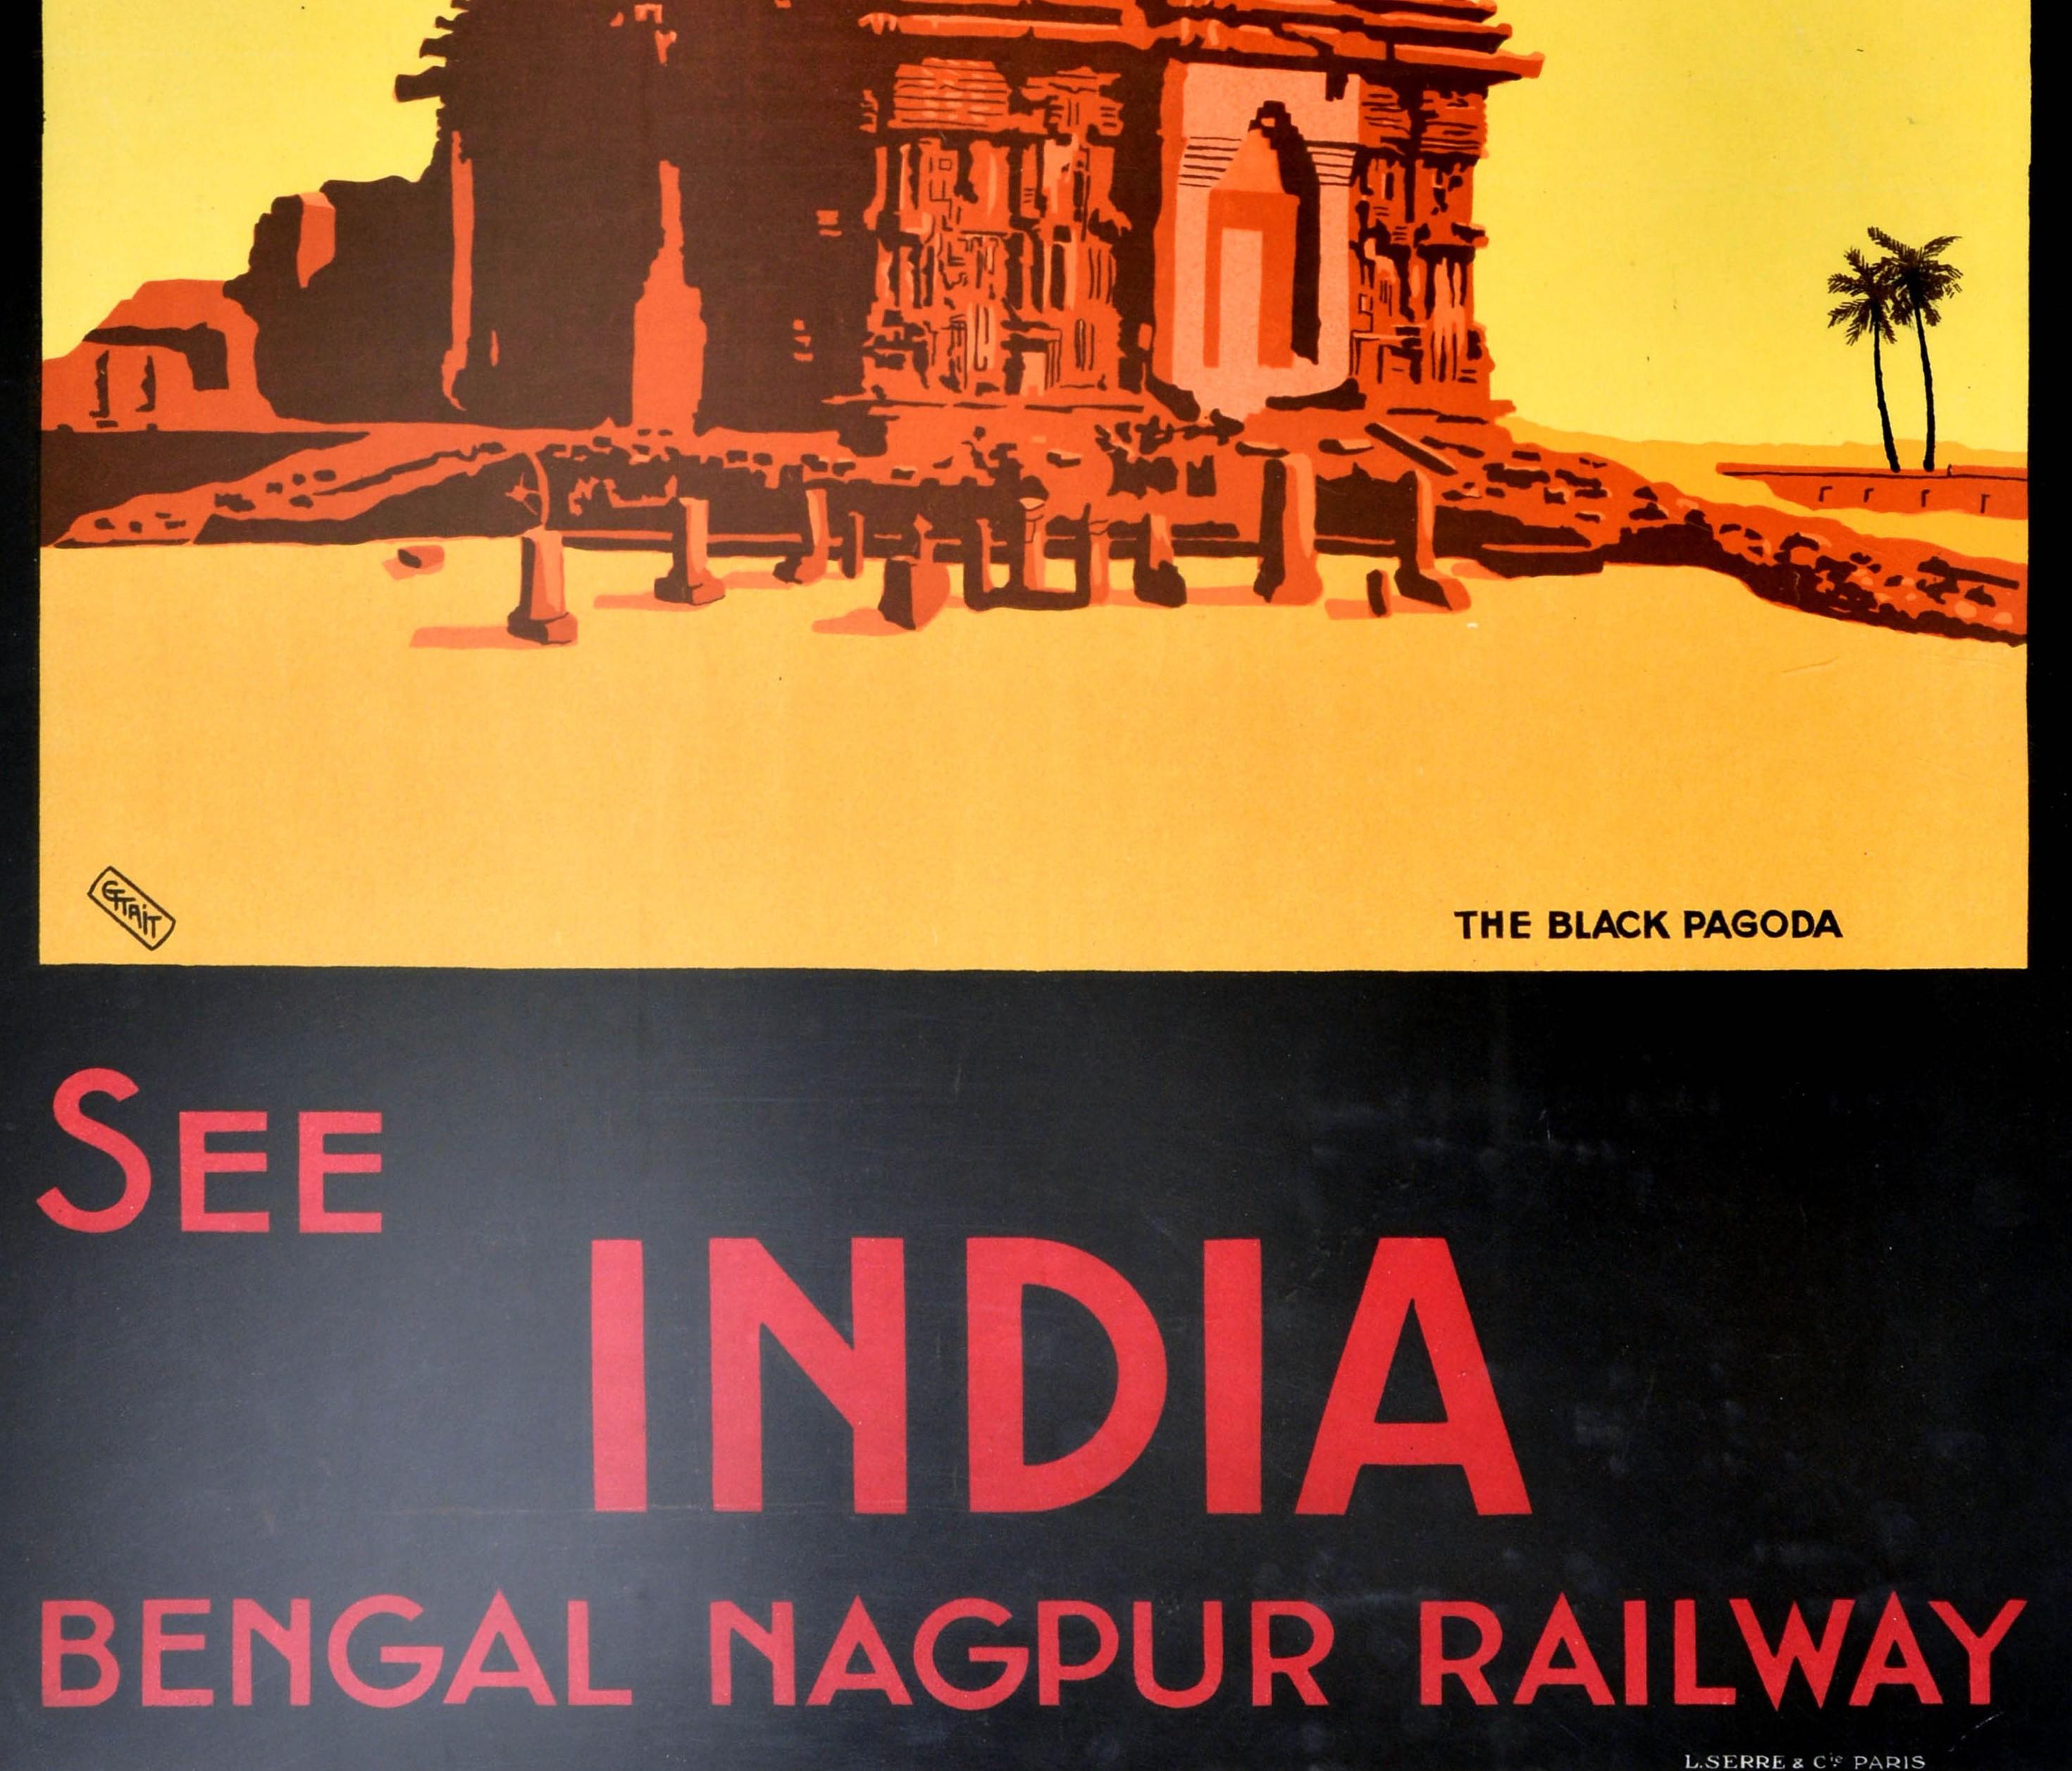 Affiche ferroviaire ancienne originale pour Konarak, voir l'Inde, le Bengale et le Nagpur Railway. Elle présente une superbe illustration de la Pagode noire avec des ruines au premier plan et des palmiers sur le côté, sur un fond jaune, avec des